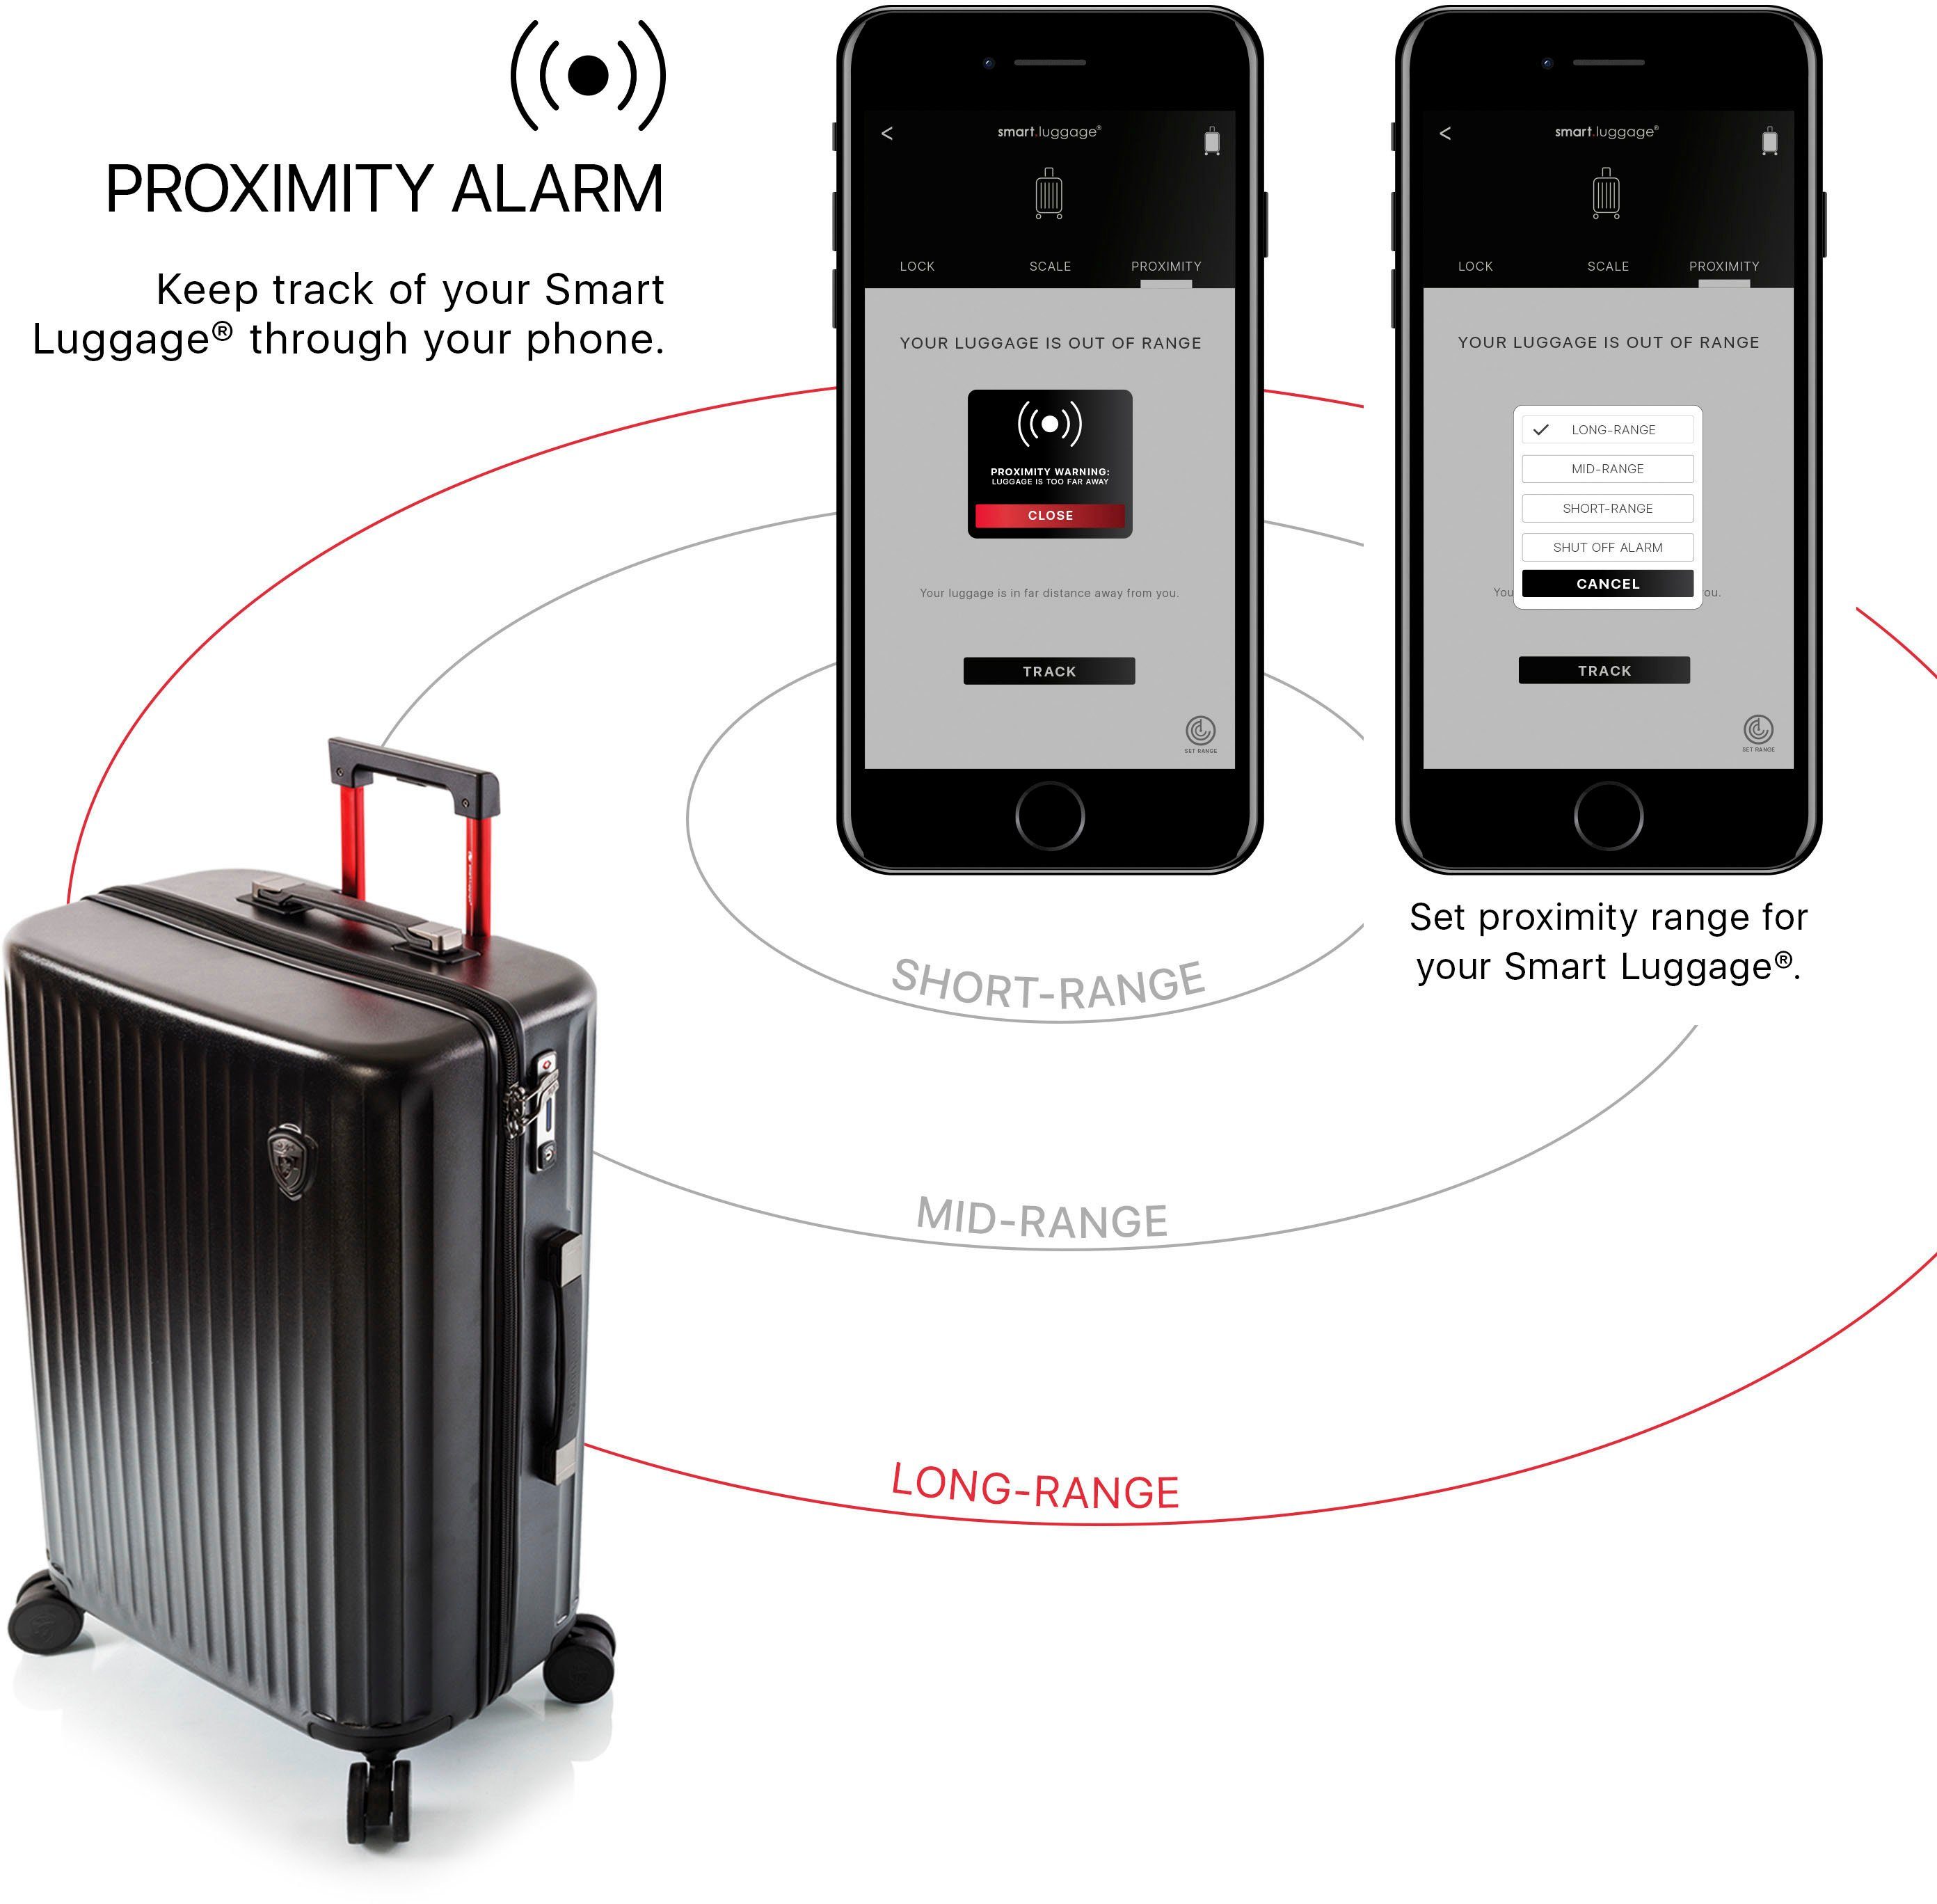 silber, 53 cm, 4 App-Funktion Hartschalen-Trolley Rollen, Luggage® High-End-Gepäck mit venetztes Heys vollständig Smart